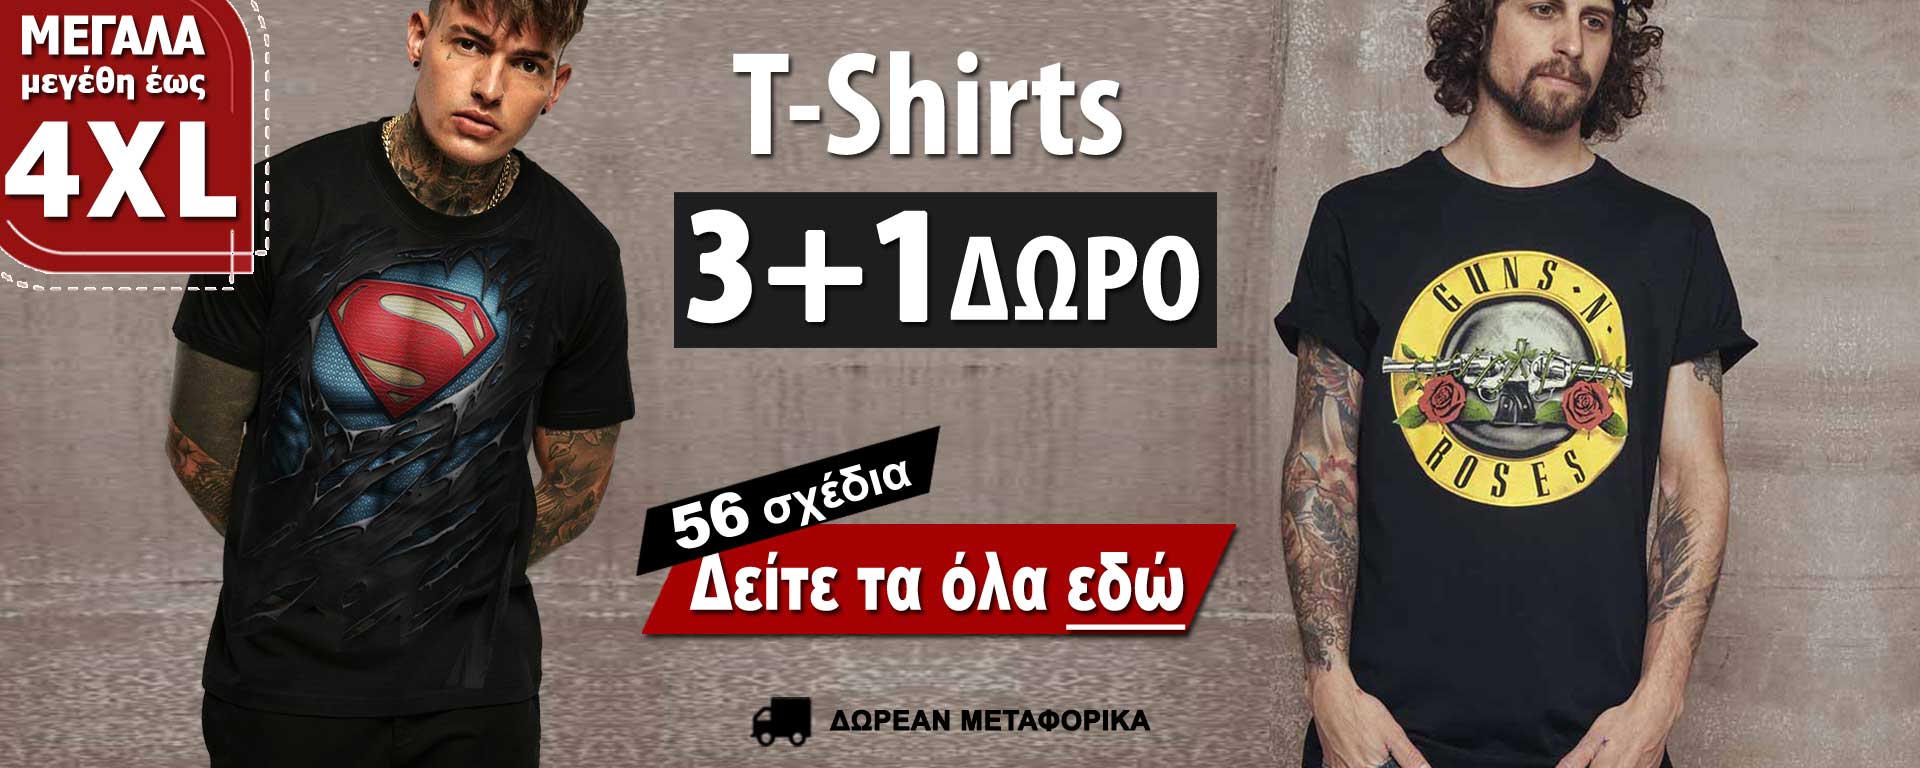 Ανδρικά T-Shirt σε προσφορά 3+1 Δώρο. Διαθέσιμα σε μεγάλα μεγέθη έως 5XL στο